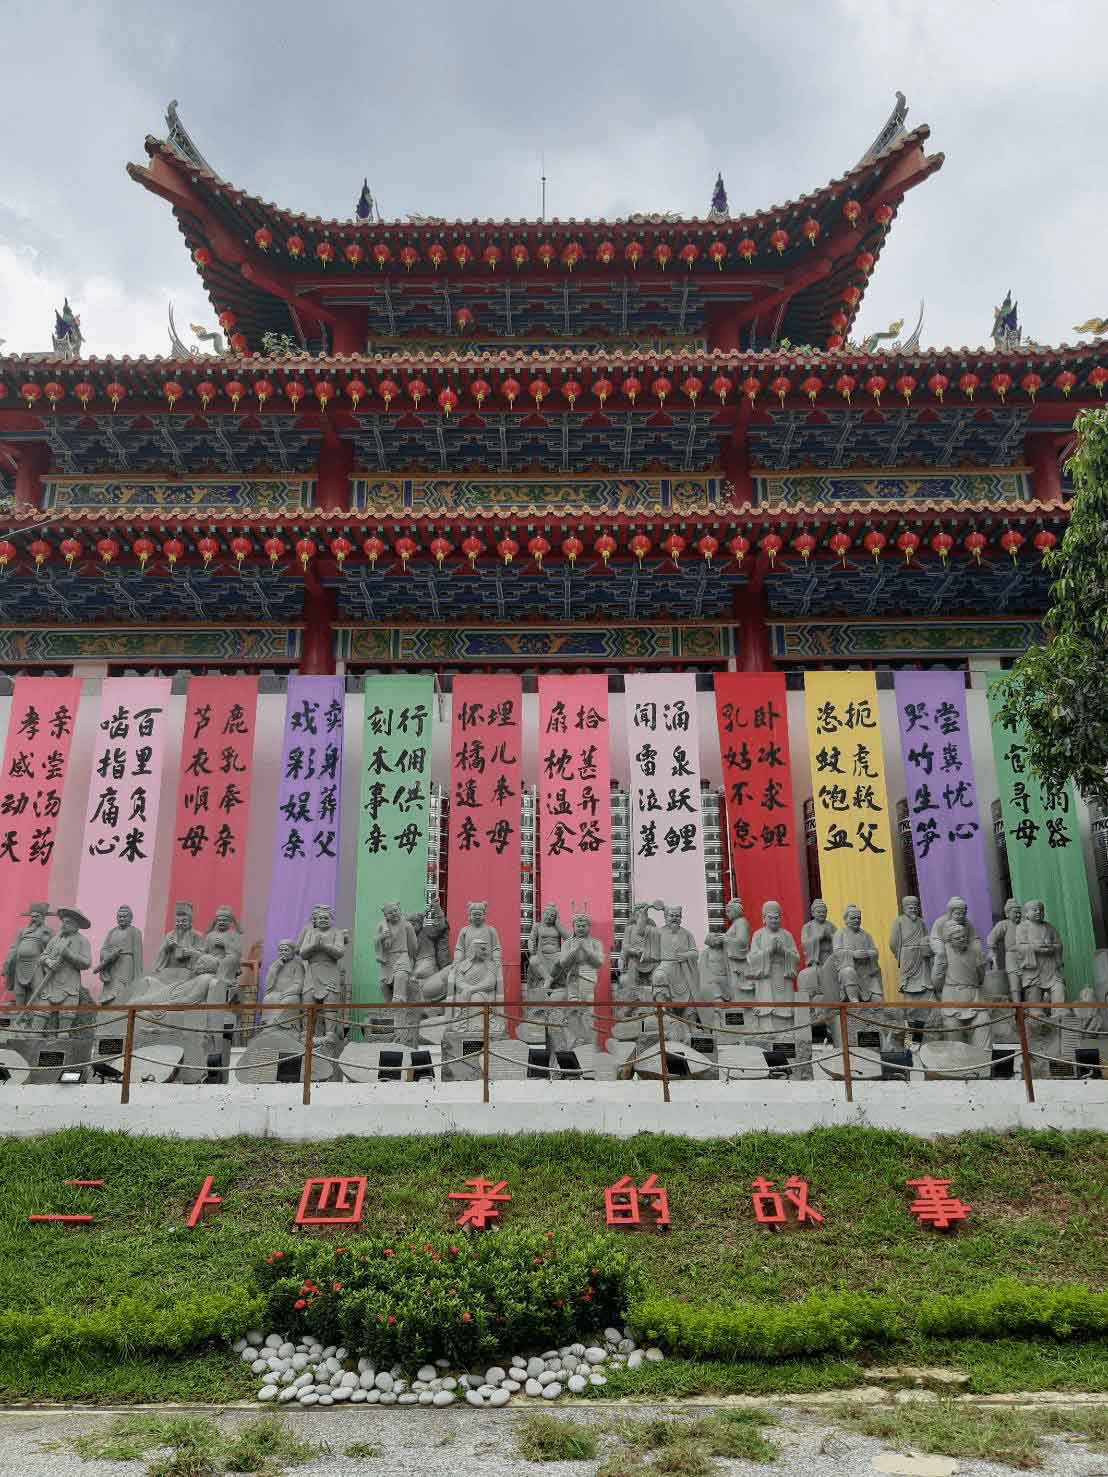 Keindahan Kuil Tiongkok di Atas Bukit Kuala Lumpur CASA Indonesia